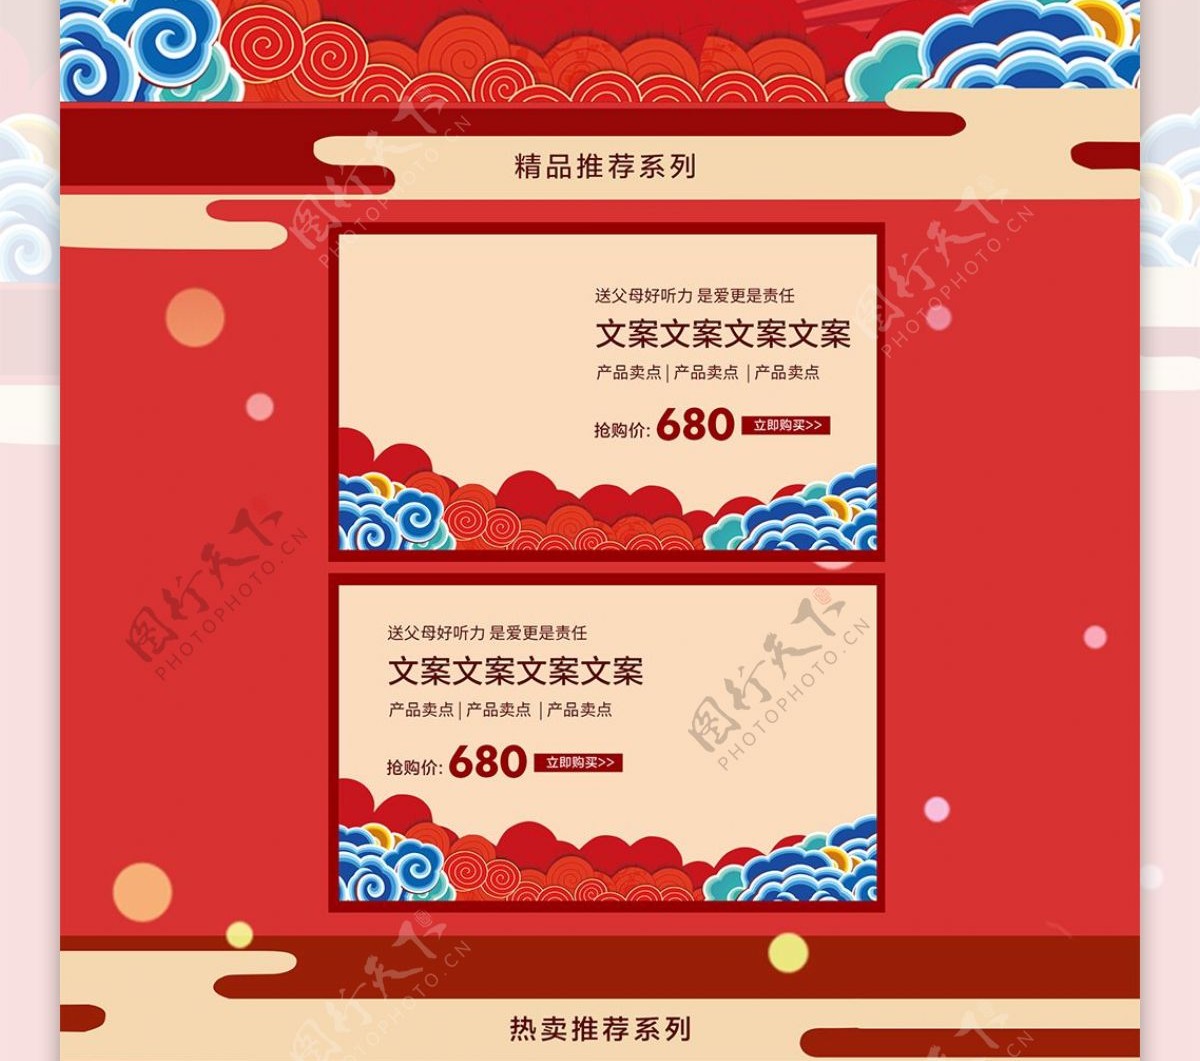 淘宝天猫红色中国风首页装修模板